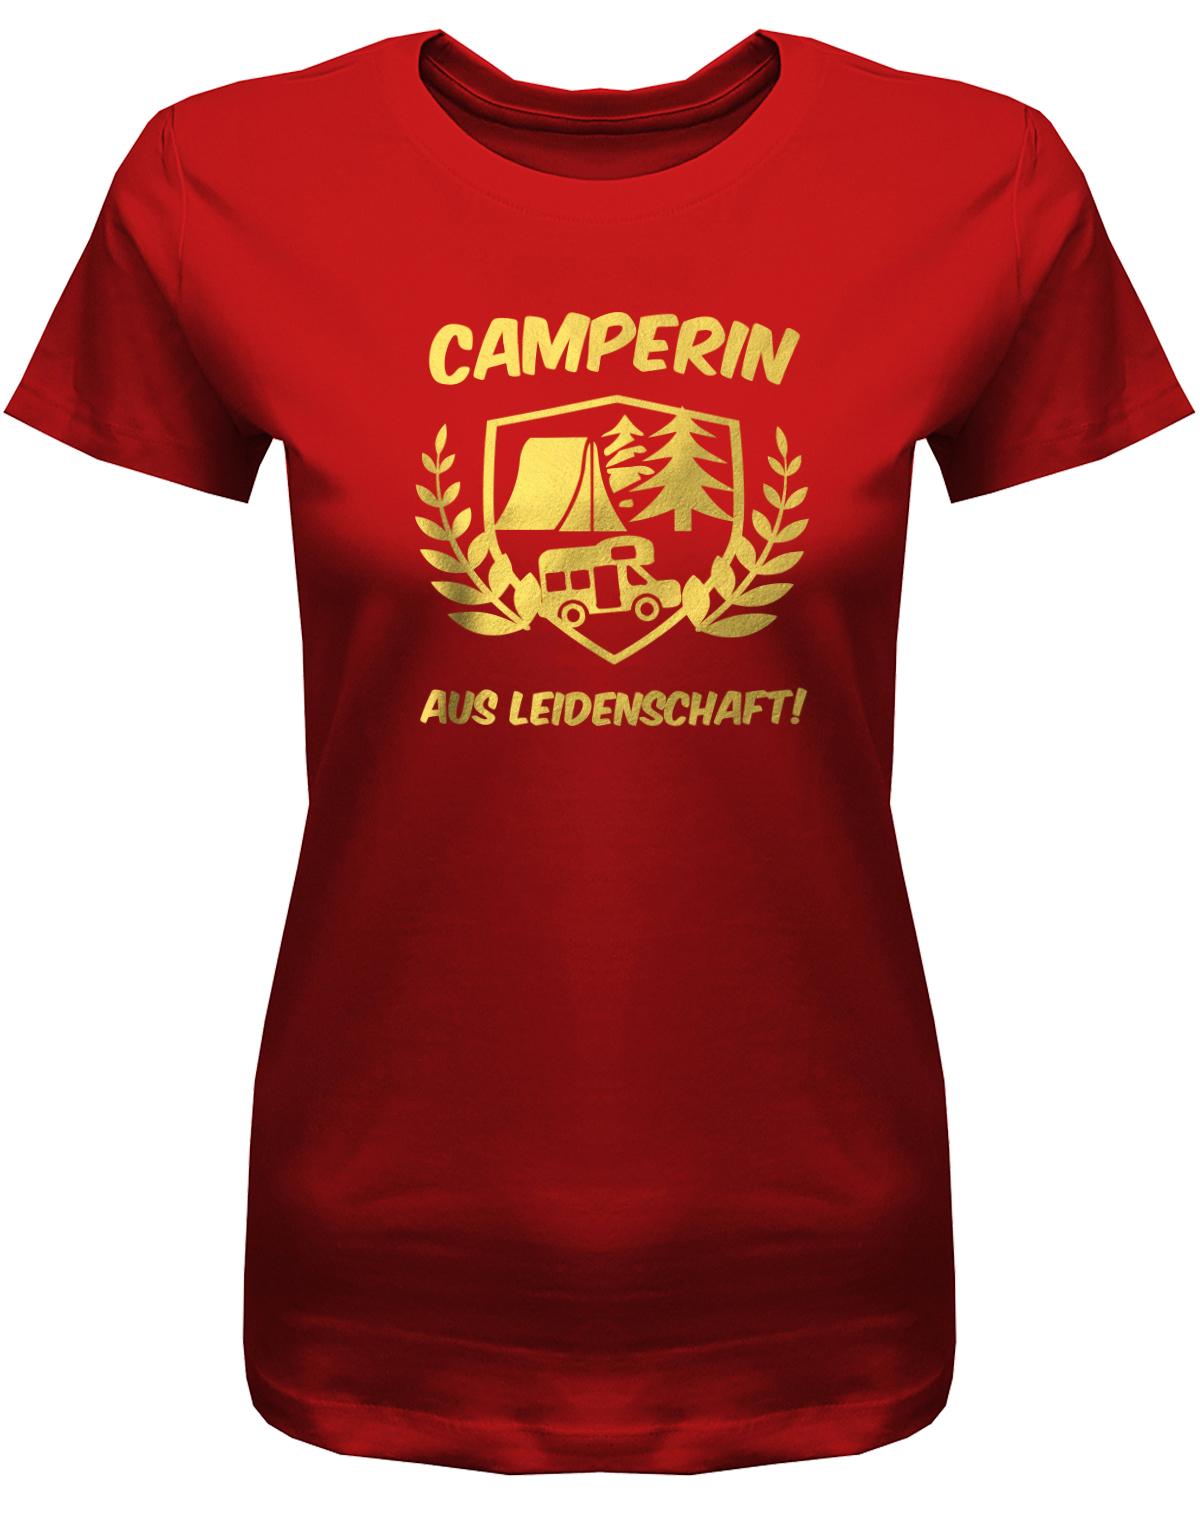 Camperin-Aus-leidenschaft-Damen-Camping-Shirt-Rot